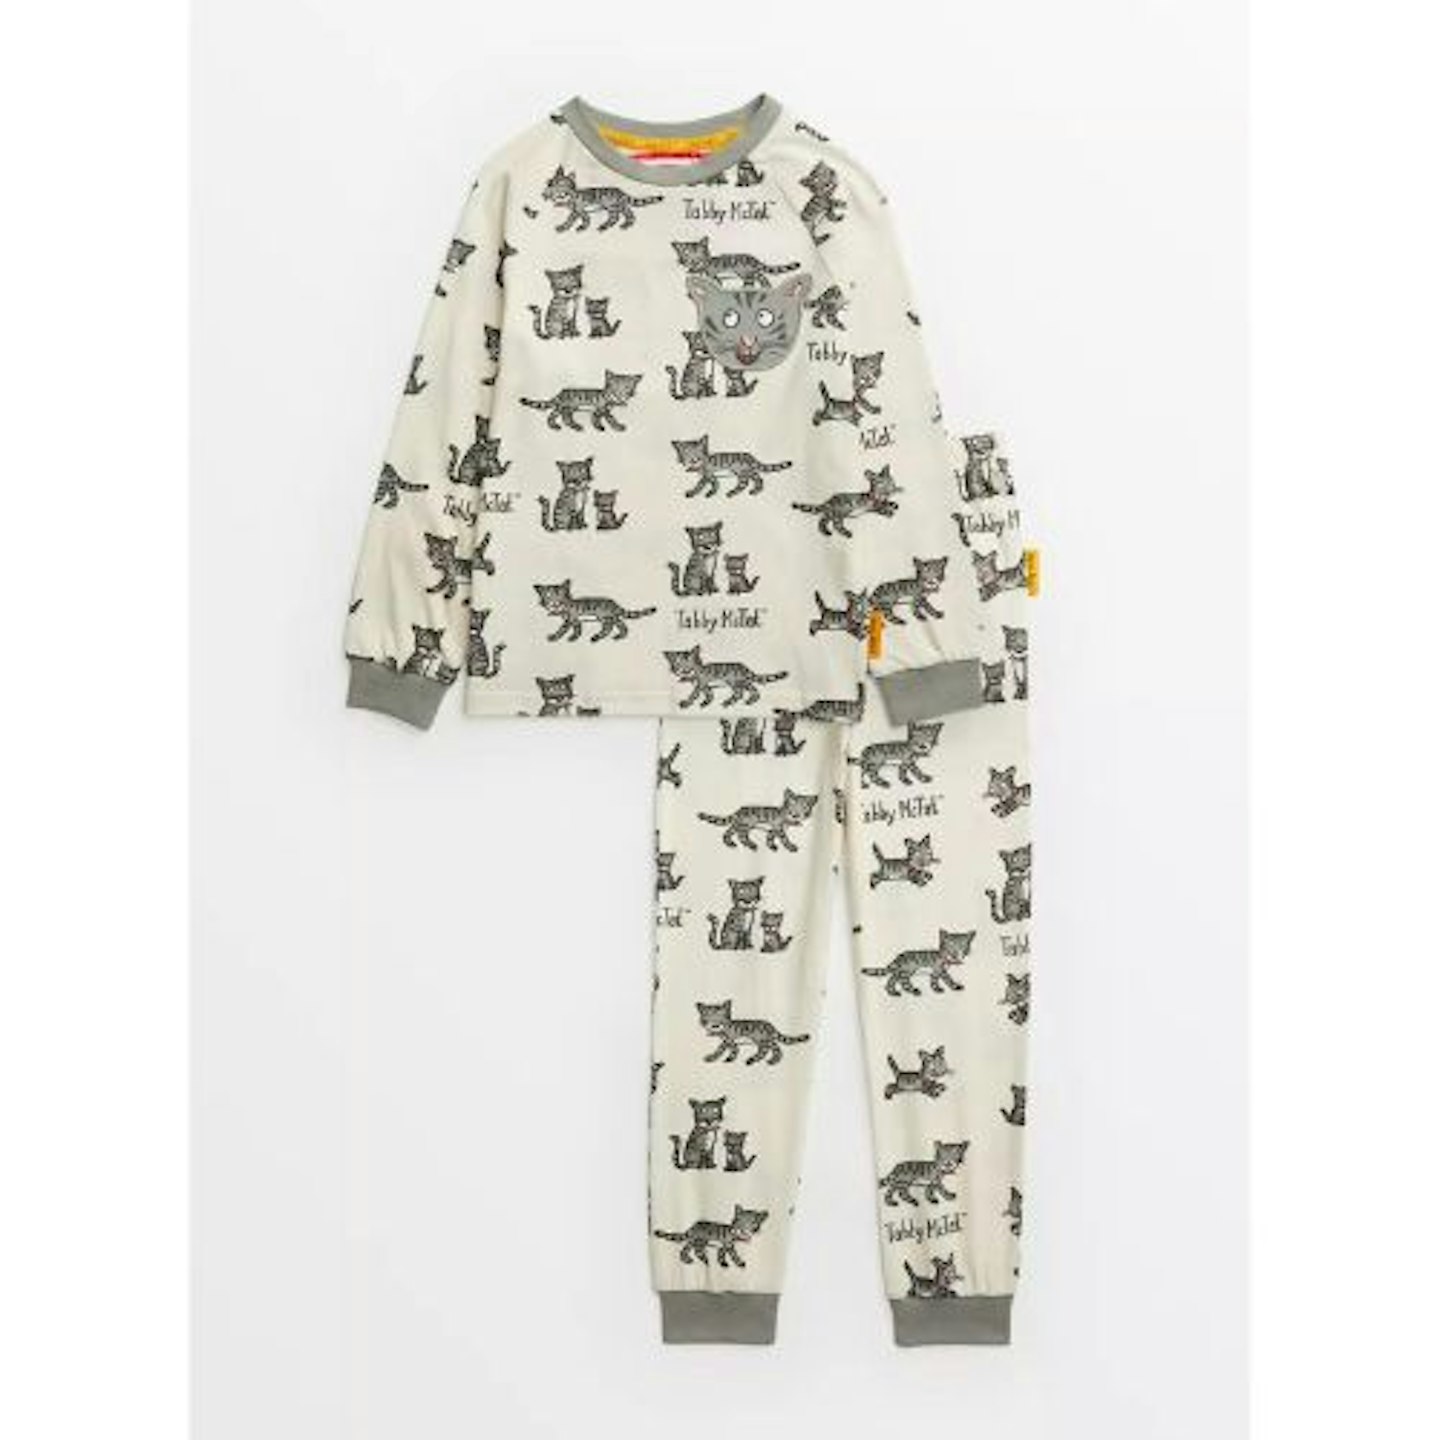 Best toddler pyjamas Tabby McTat Print Pyjamas 2-3 years